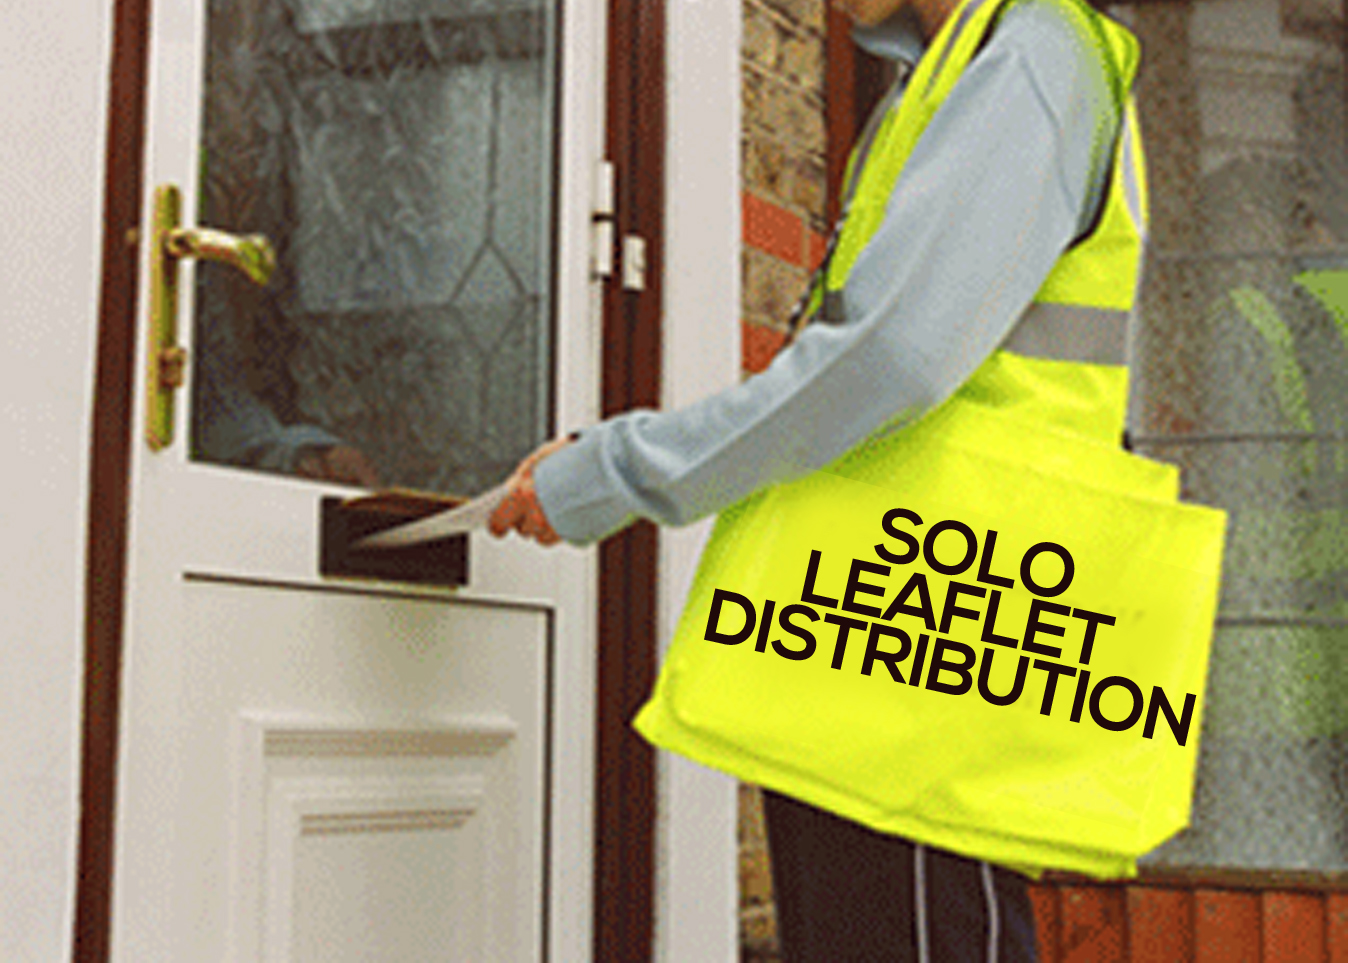 leaflet distribution